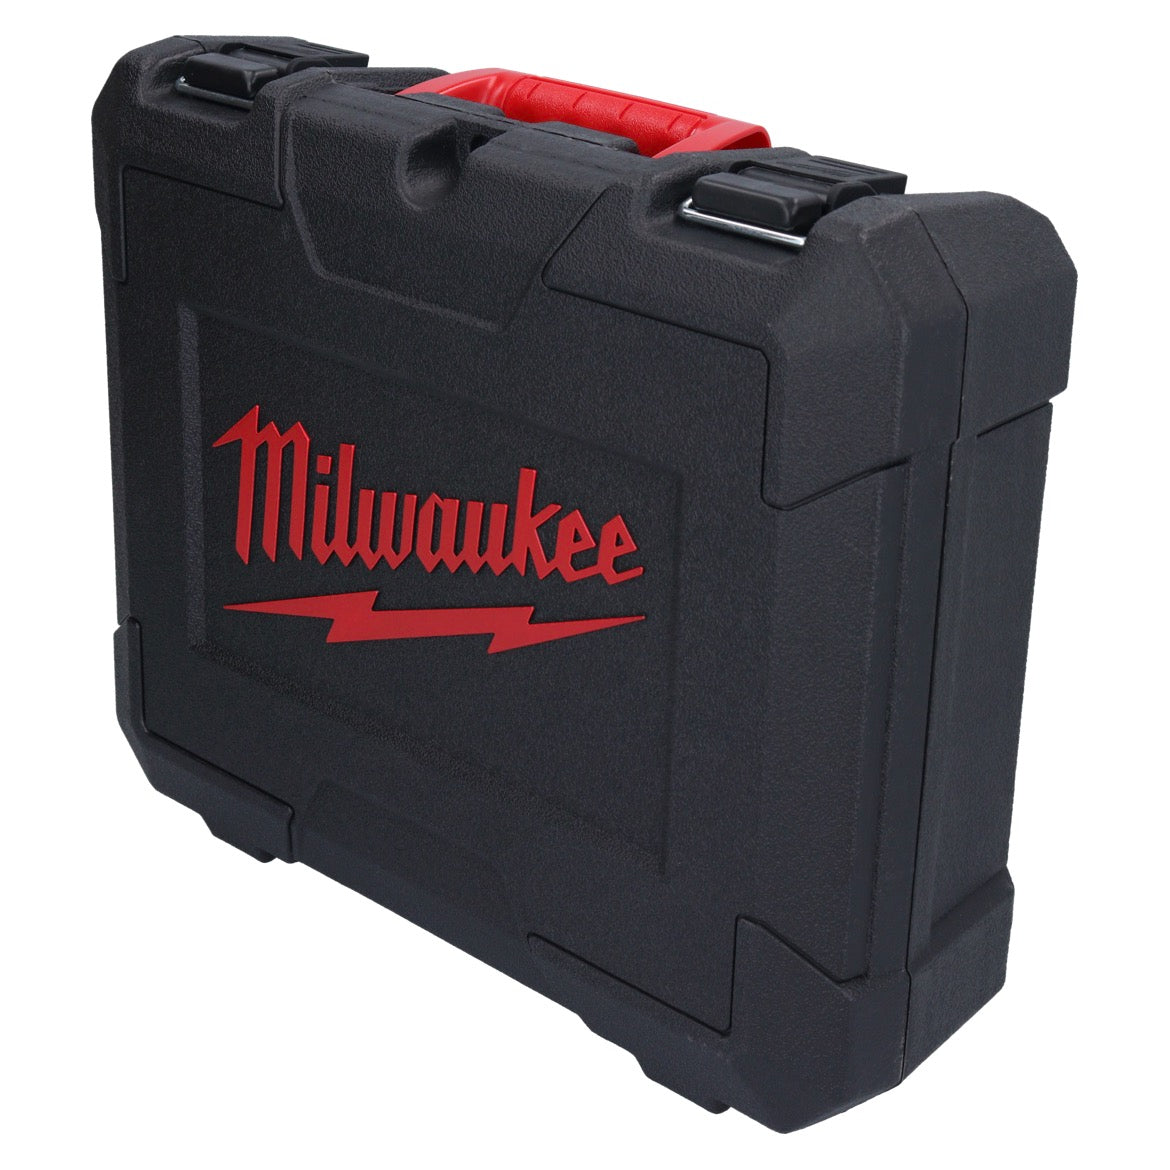 Milwaukee Transport Werkzeug Koffer 370 x 310 x 110 mm für M12 Schlagschrauber / Bohrschrauber / Schlagbohrschrauber